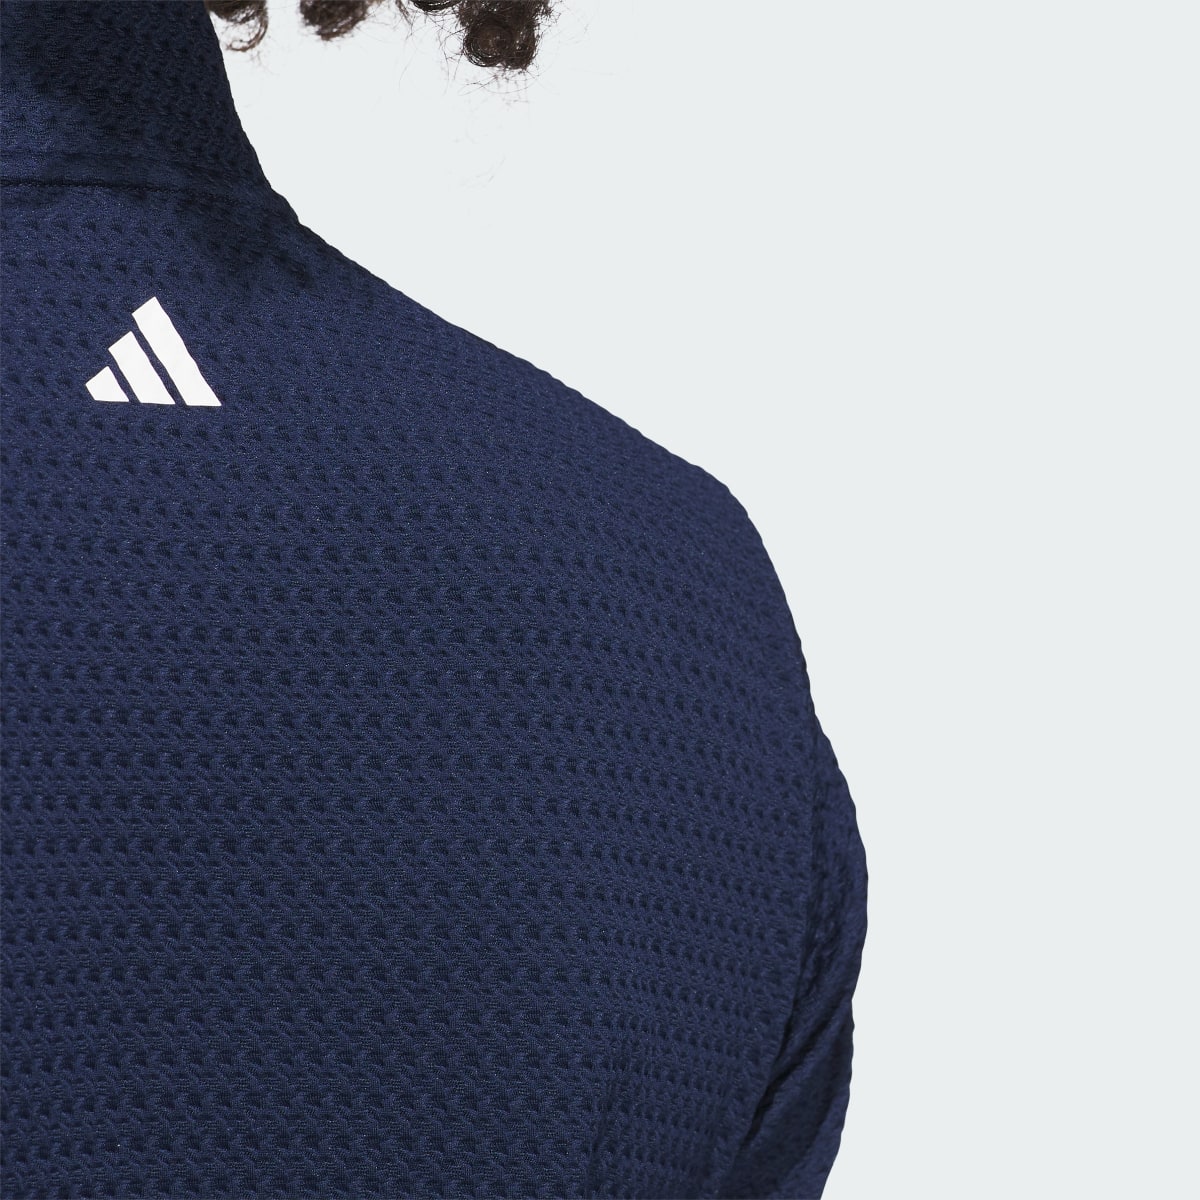 Adidas Ultimate365 Textured Jacket. 7